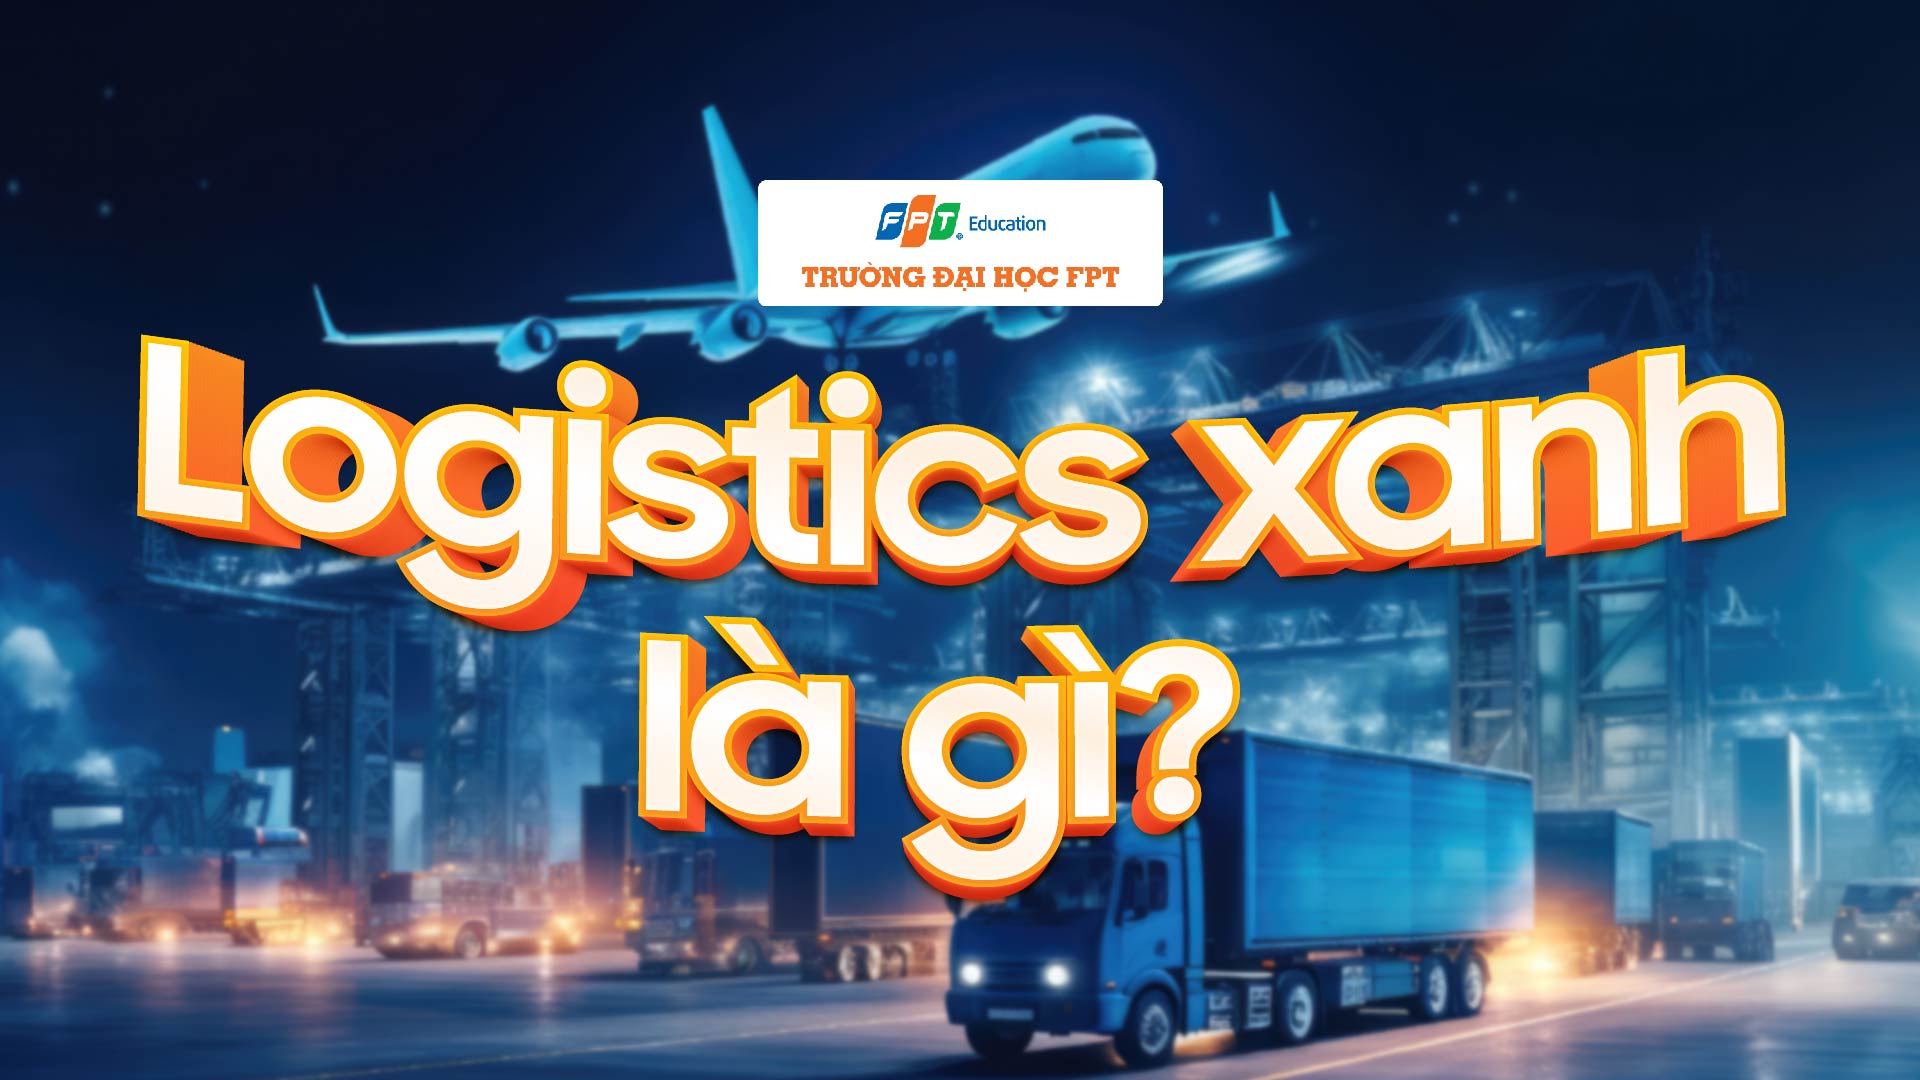 Logistics xanh là gì